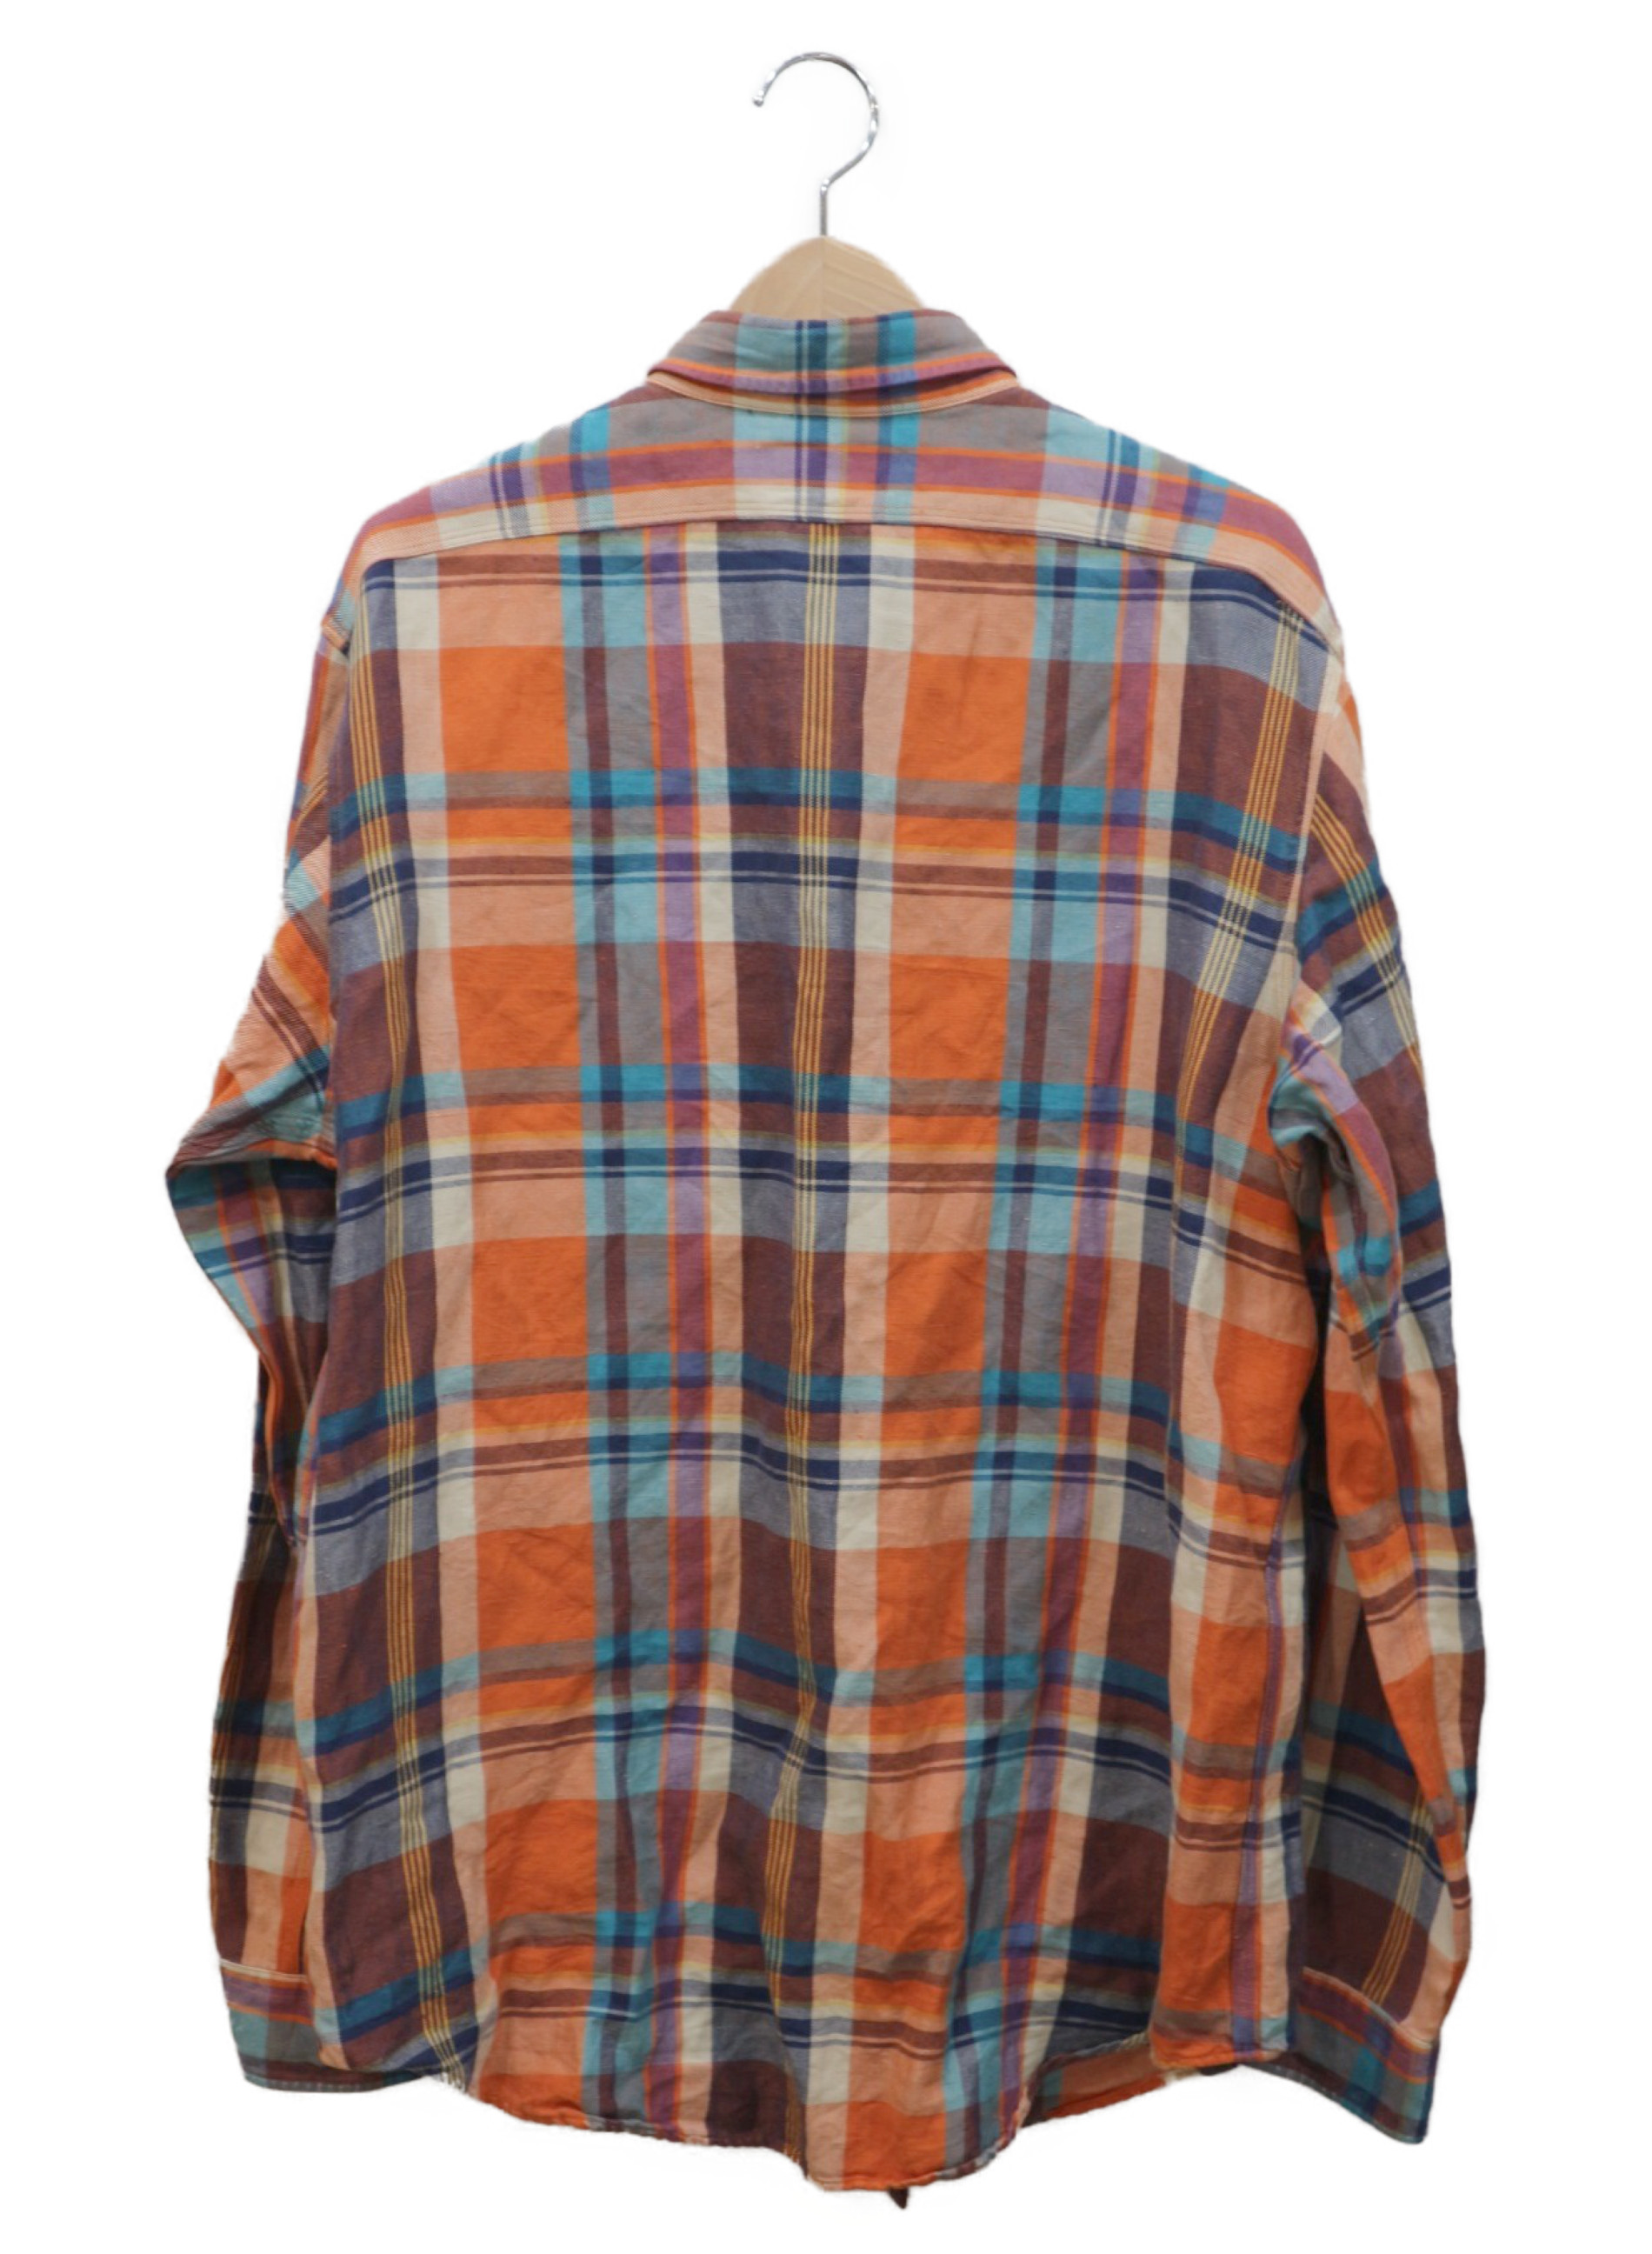 POLO RALPH LAUREN (ポロラルフローレン) ビッグチェックシャツ オレンジ×ブルー サイズ:L